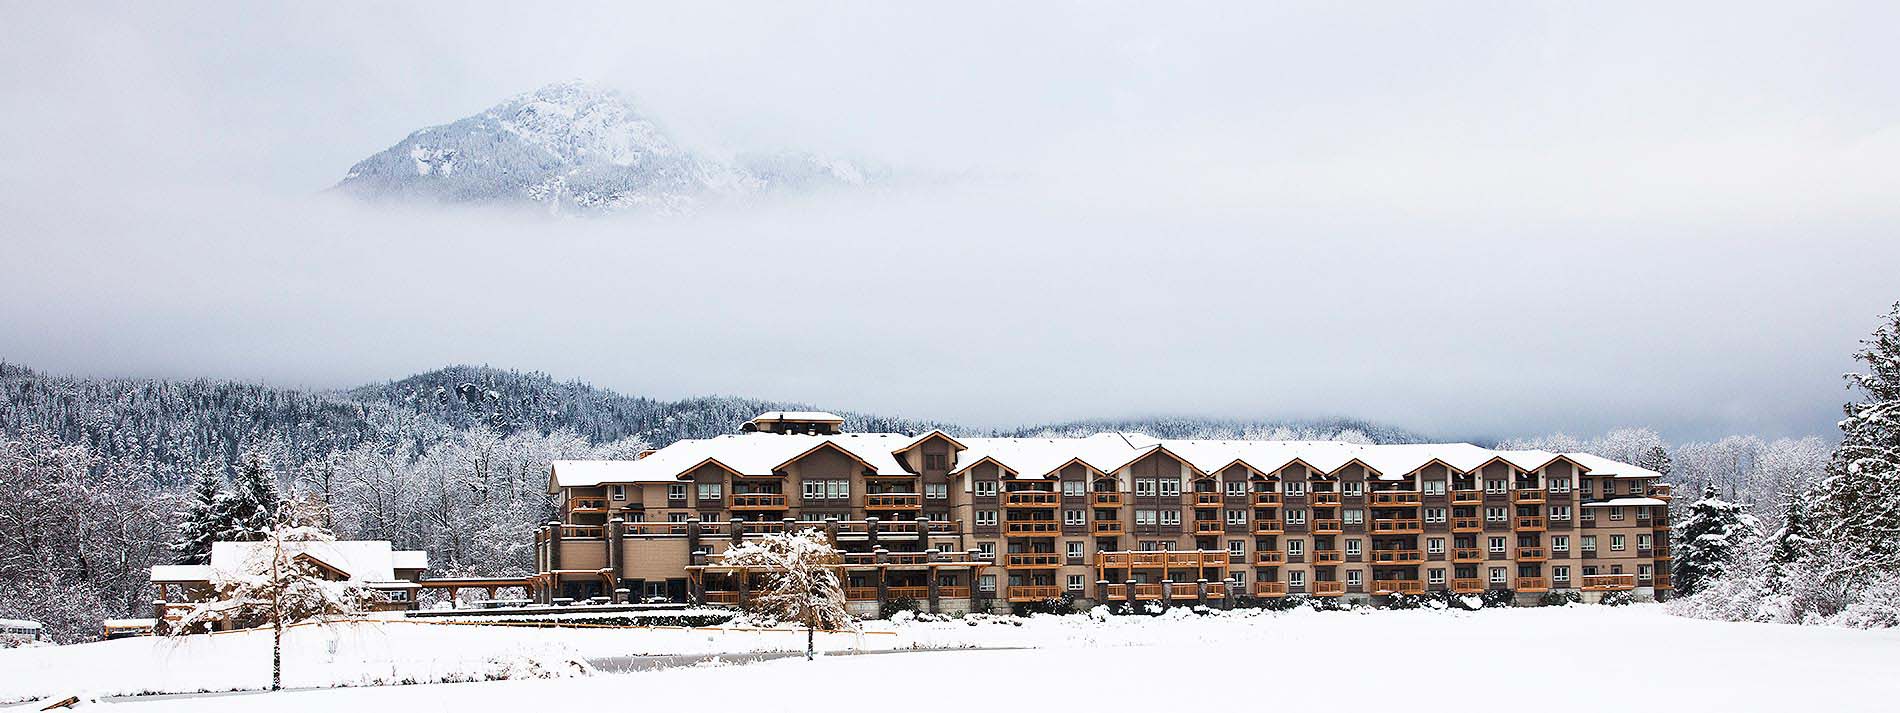 Executive Suites Hotel & Resort Squamish in winter